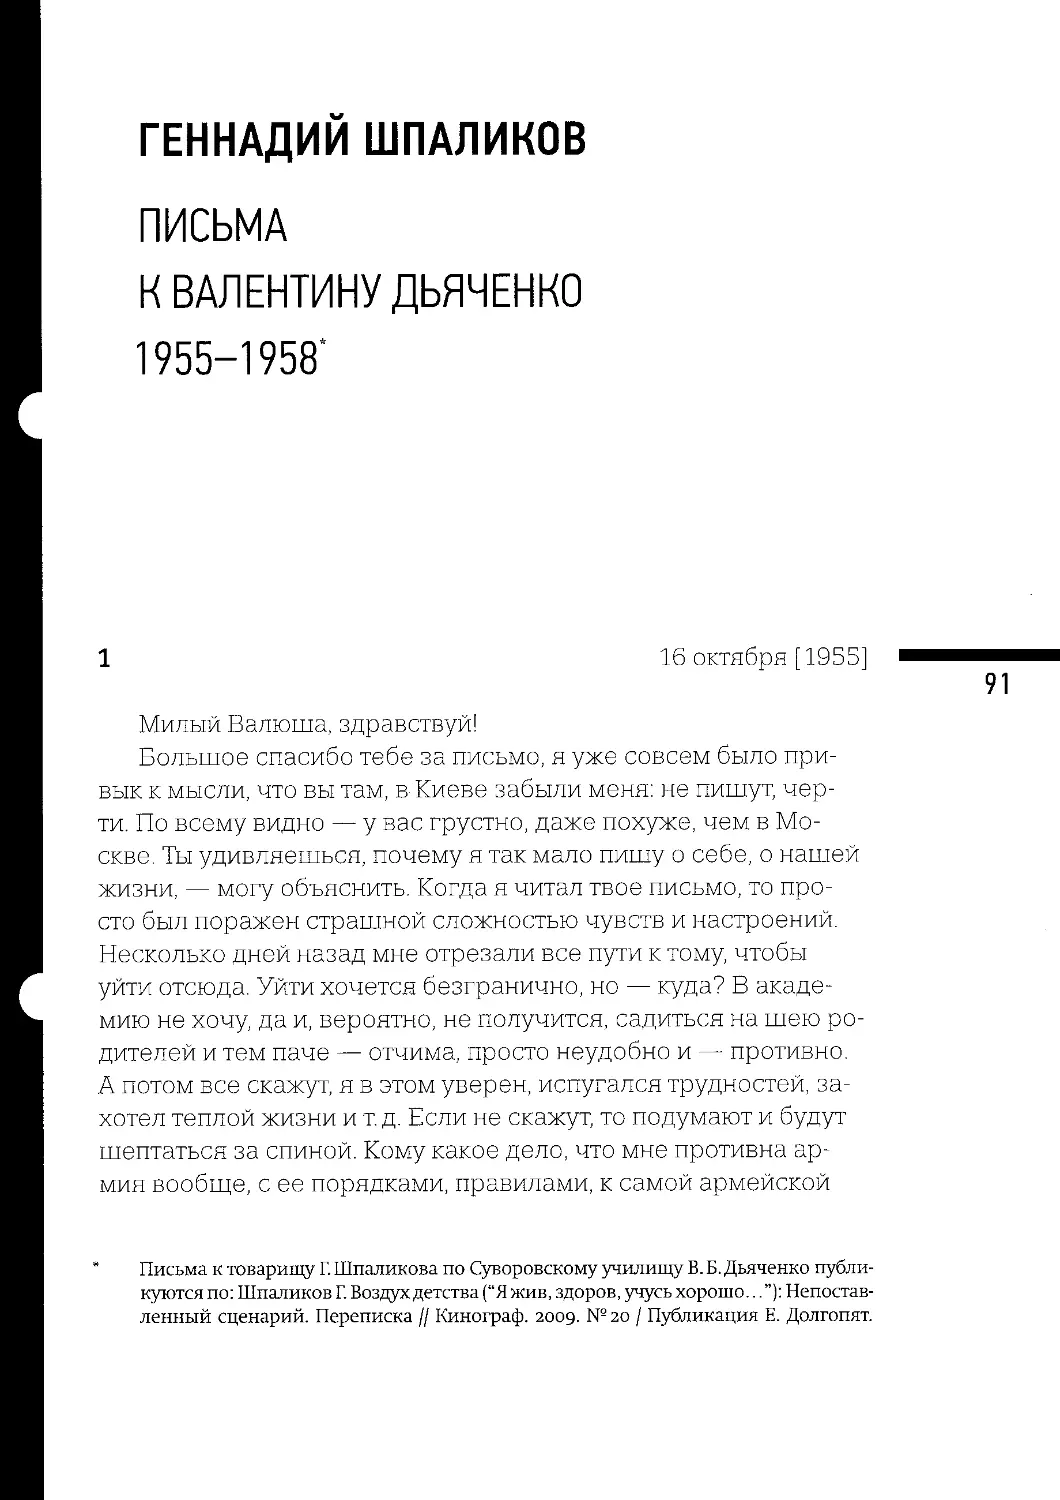 Письма к Валентину Дьяченко. 1955-1958